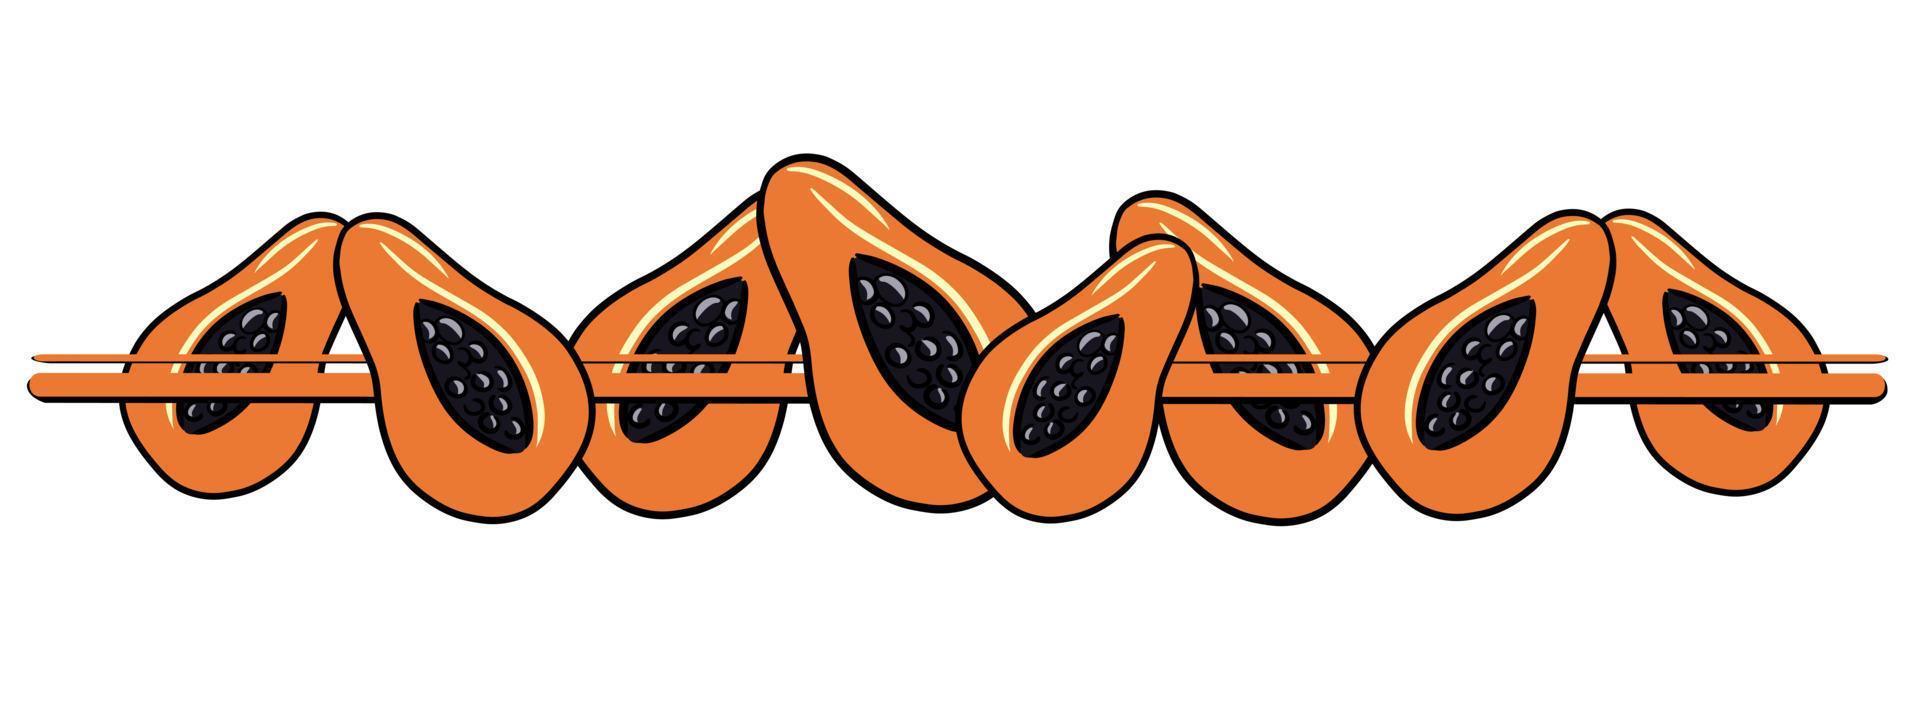 bordure horizontale, bord, moitiés juteuses orange vif de papayes tropicales, illustration vectorielle en style cartoon vecteur